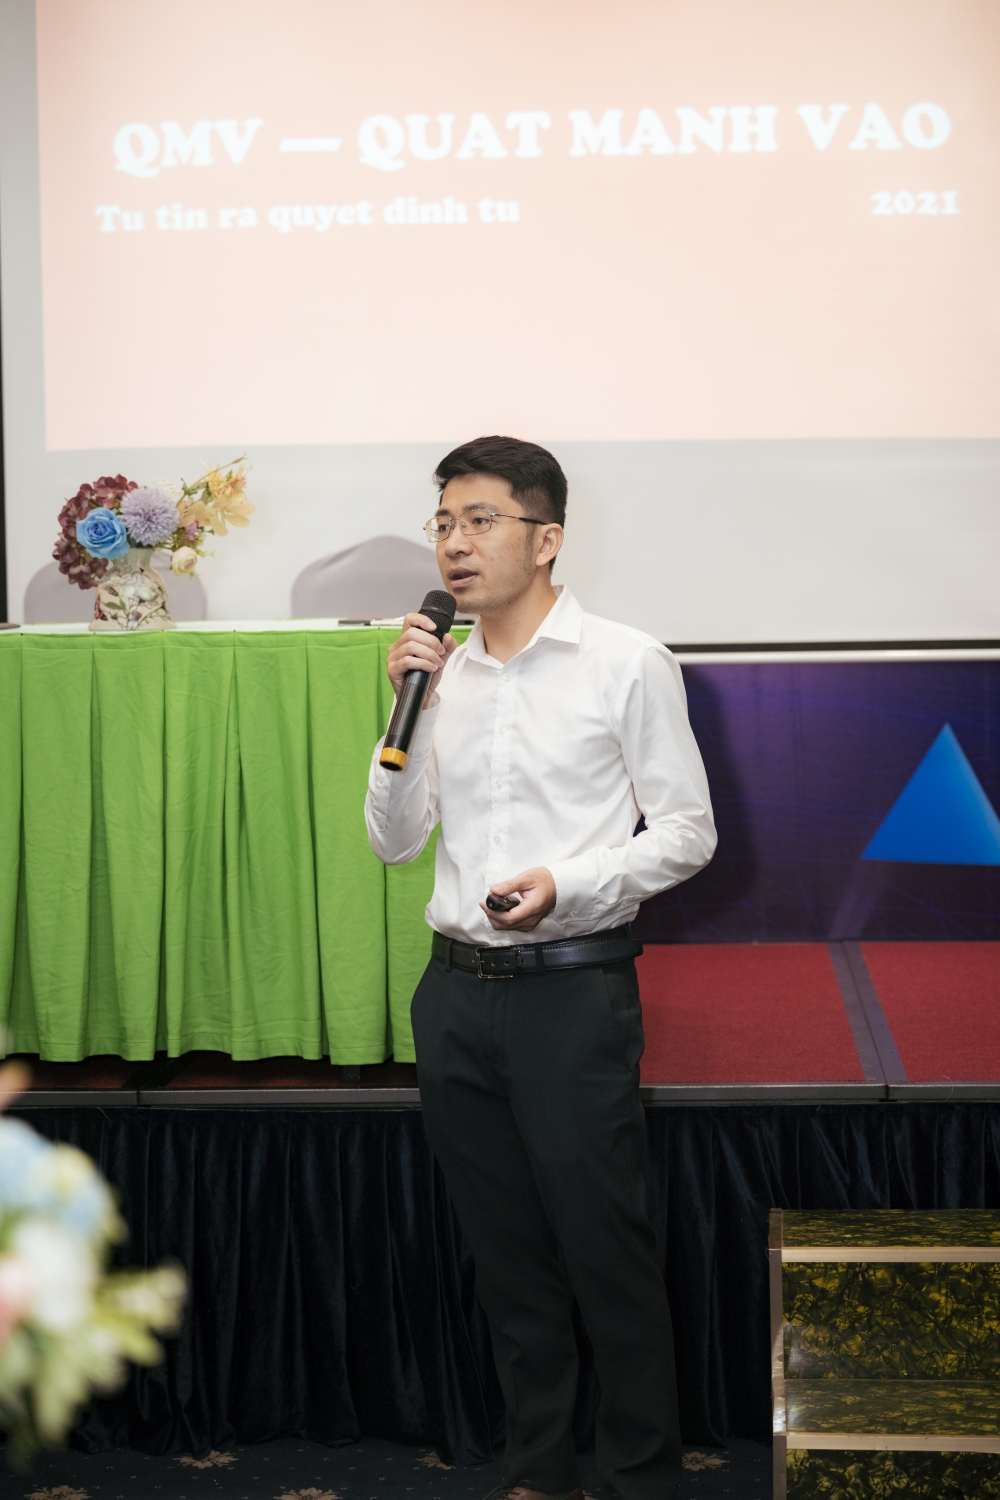 Quỹ chia sẻ 3S và QMV group hợp tác chiến lược, đồng hành cùng nhà đầu tư chứng khoán Việt